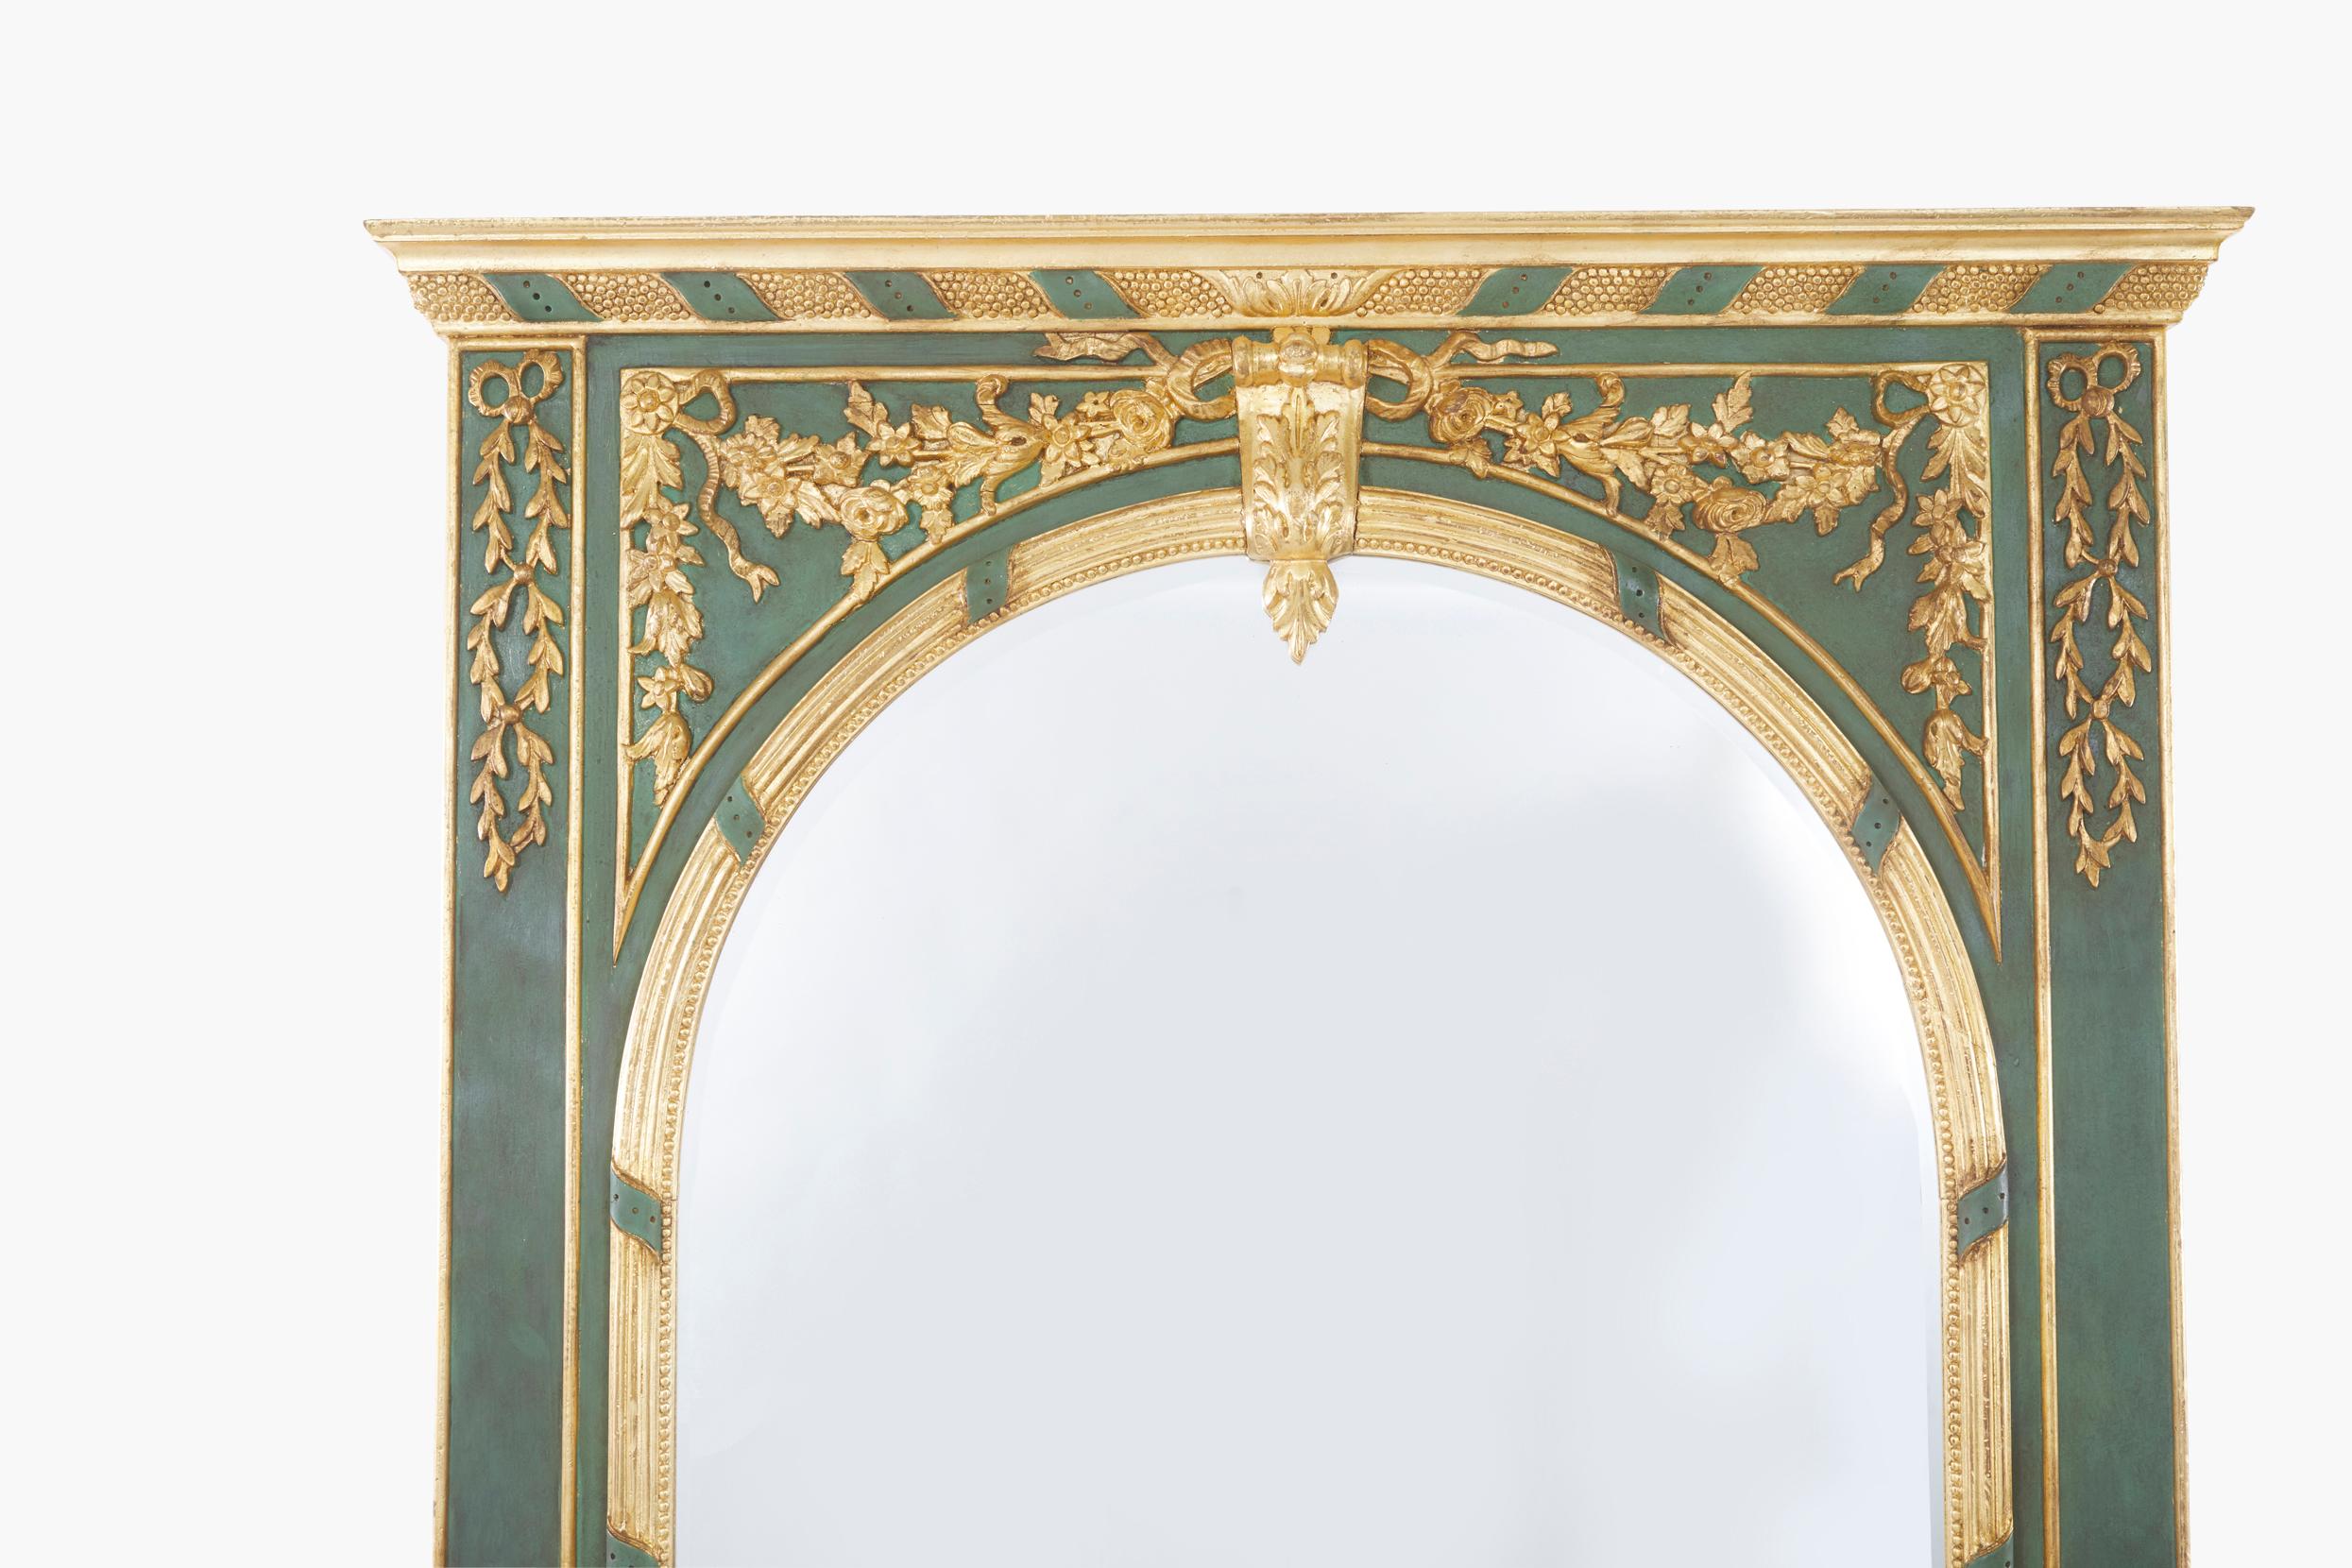 Beeindruckender italienischer Pfeilerspiegel aus dem 19. Jahrhundert mit bemaltem und vergoldetem Rahmen und vergoldeten Details an der Oberseite. Der Pfeilerspiegel ist in hervorragendem antiken Zustand mit bemerkenswert intakter Goldvergoldung und